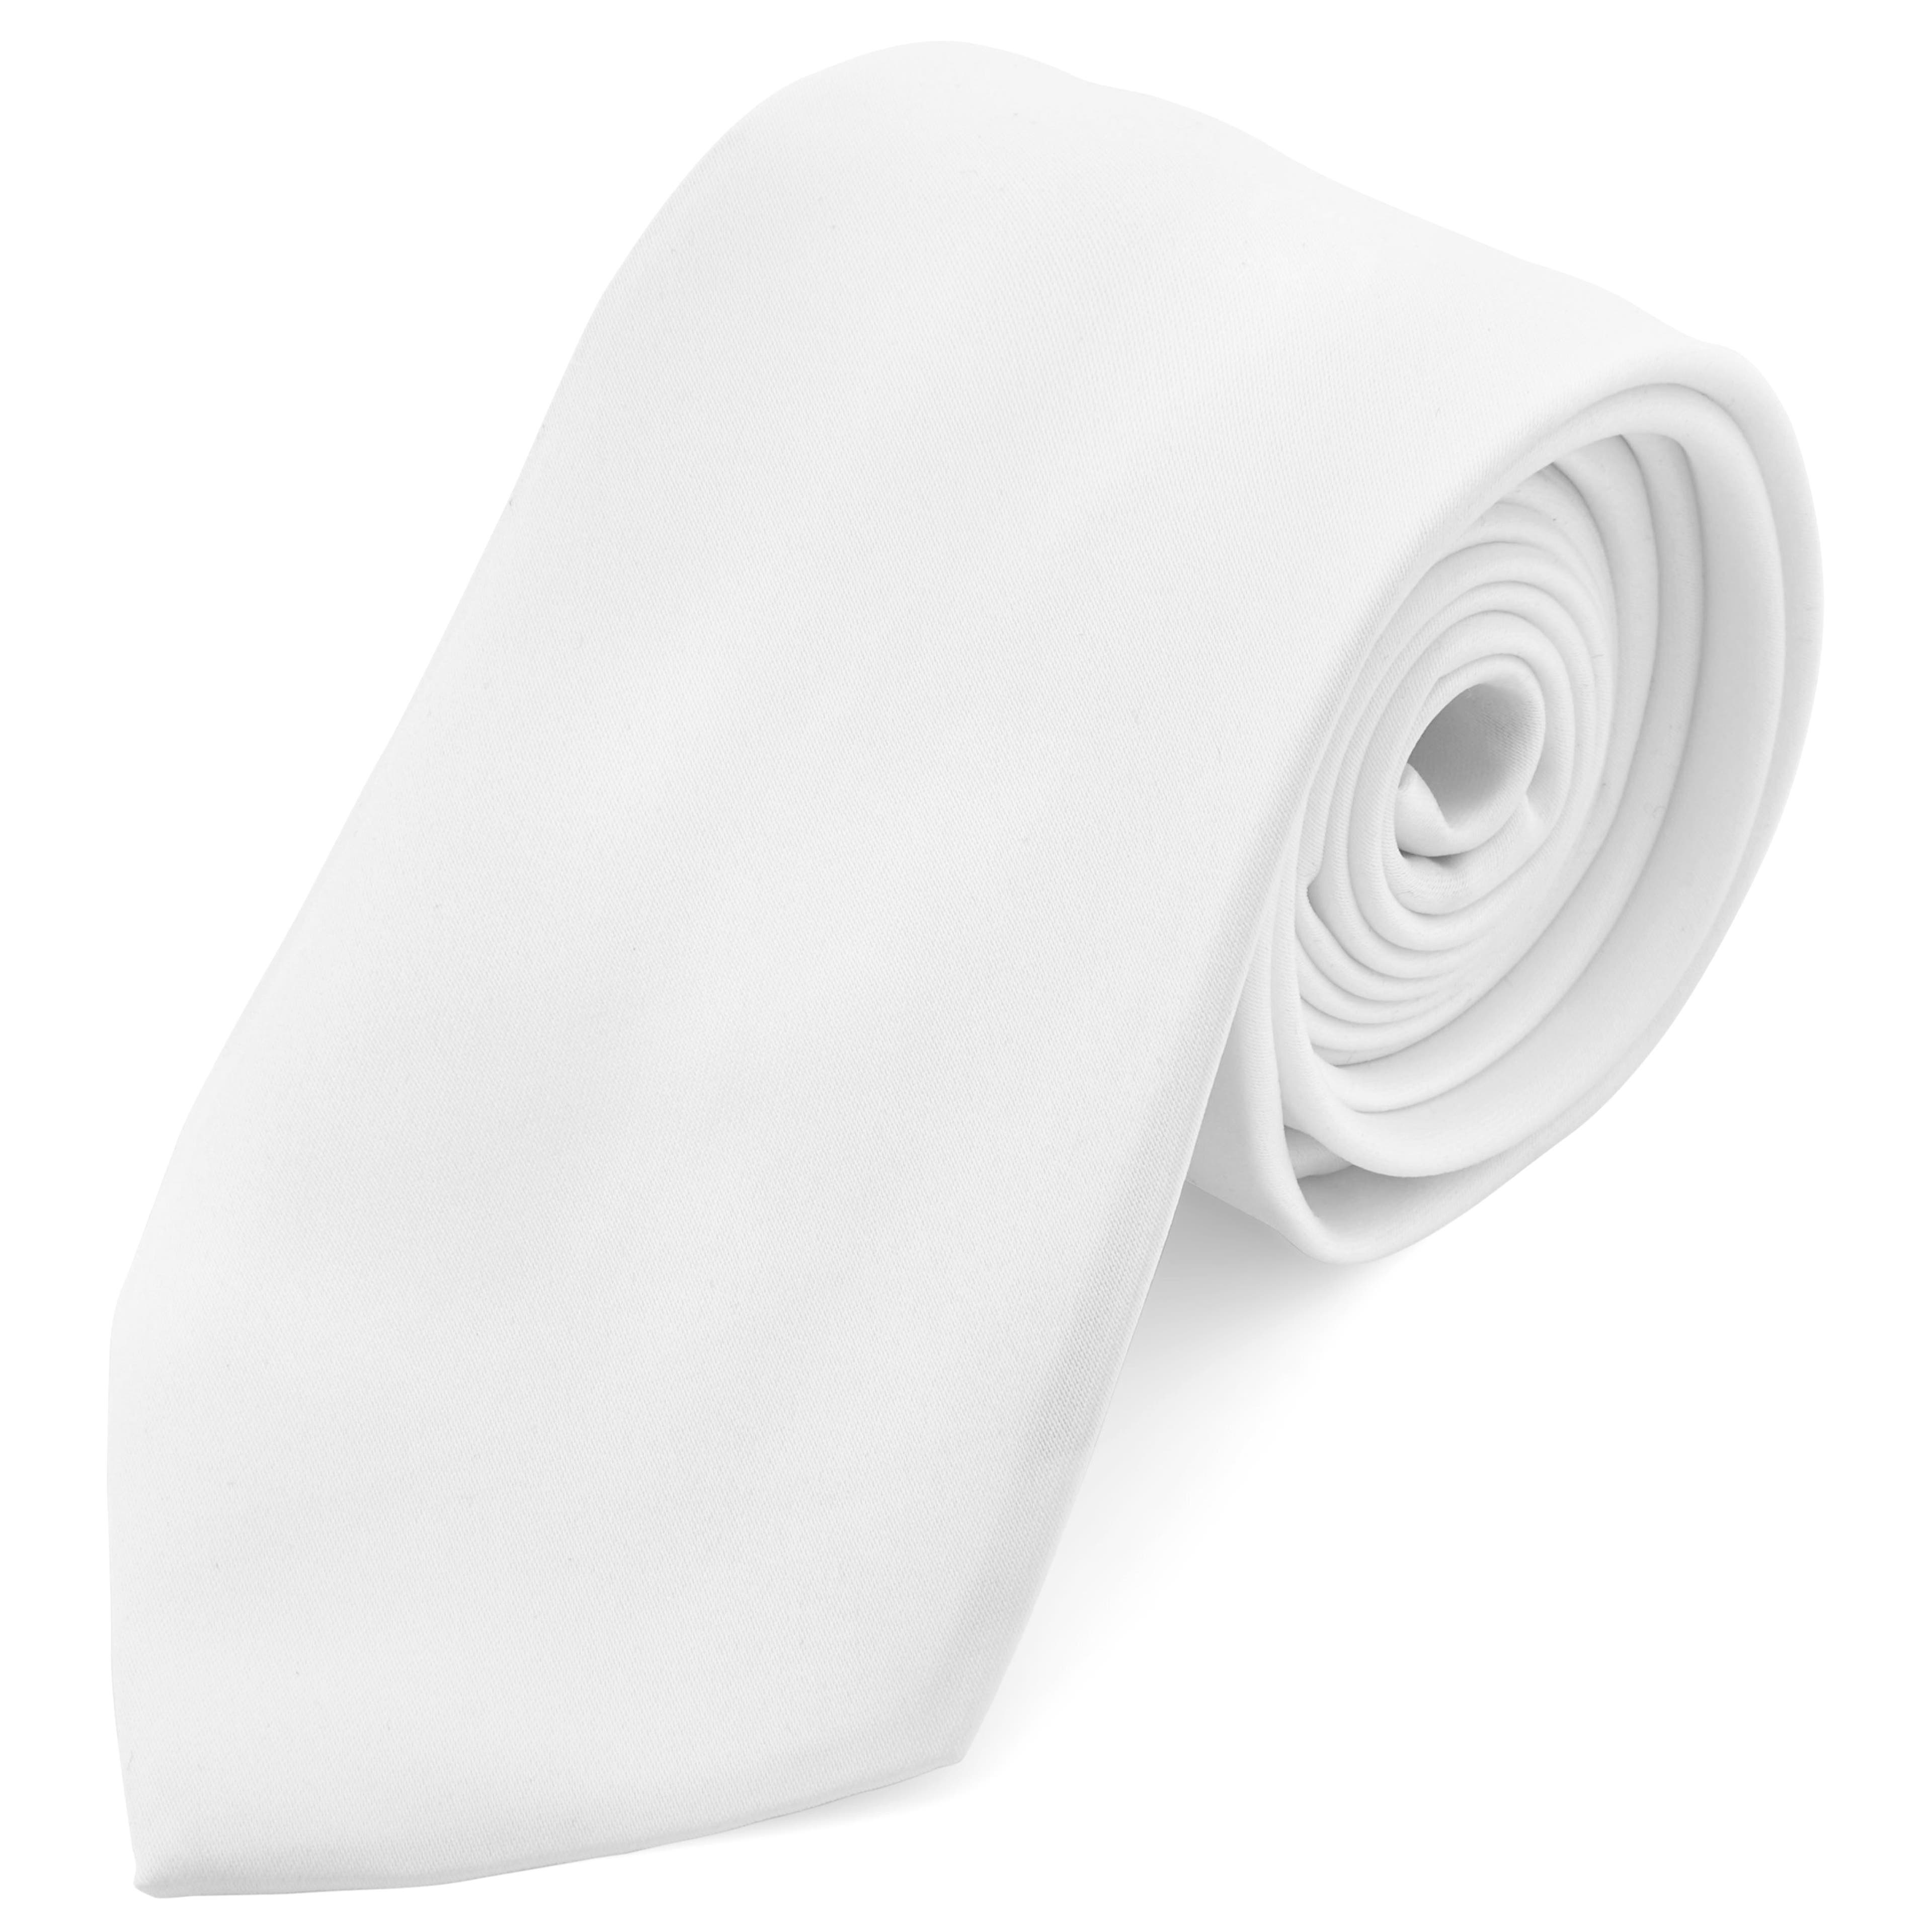 Cravate classique blanche 8 cm